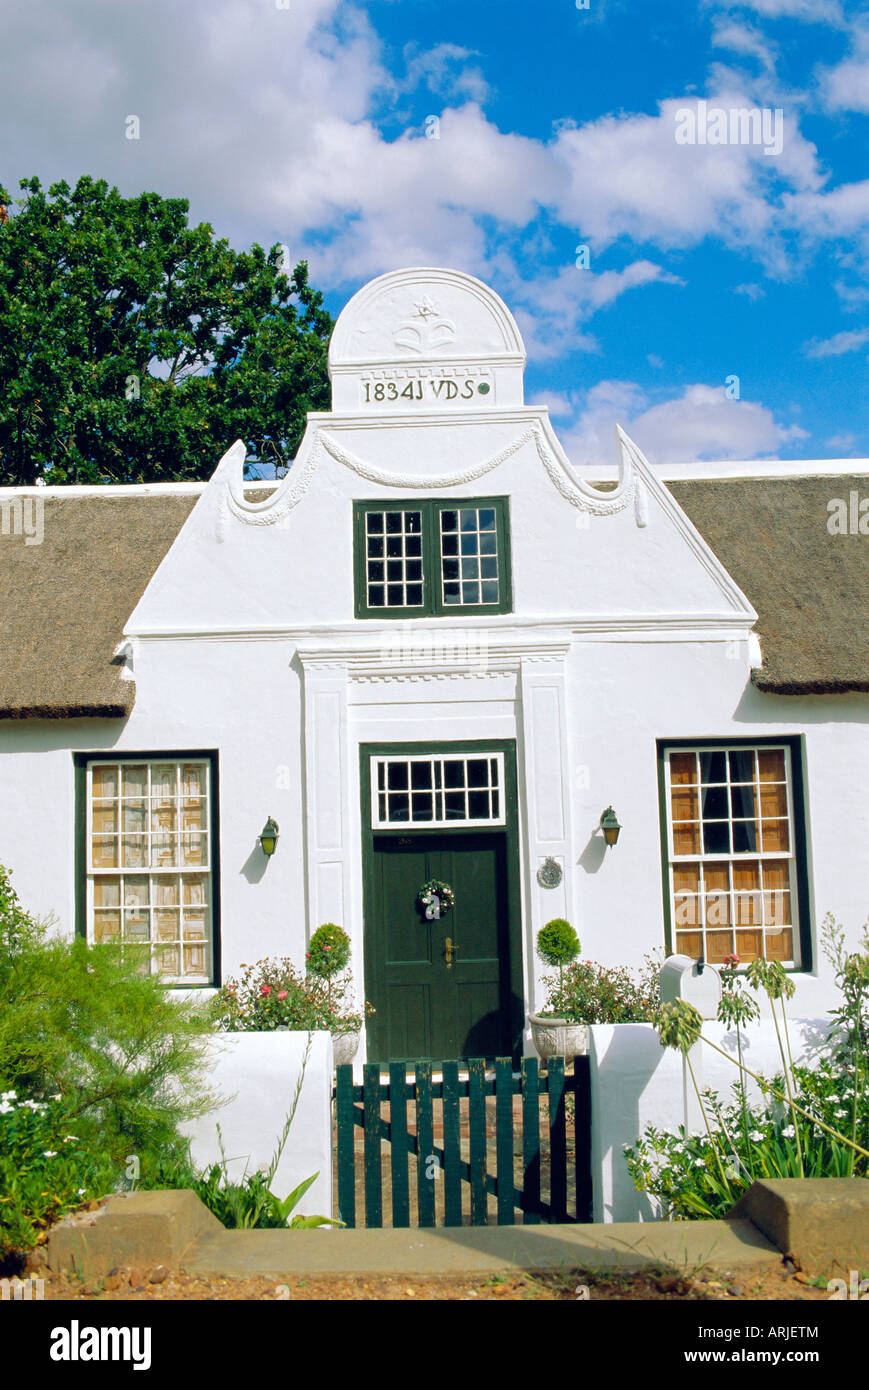 Cape niederländischen Architektur, Anfang 19. Jh. Stellenbosch, Südafrika Stockfoto